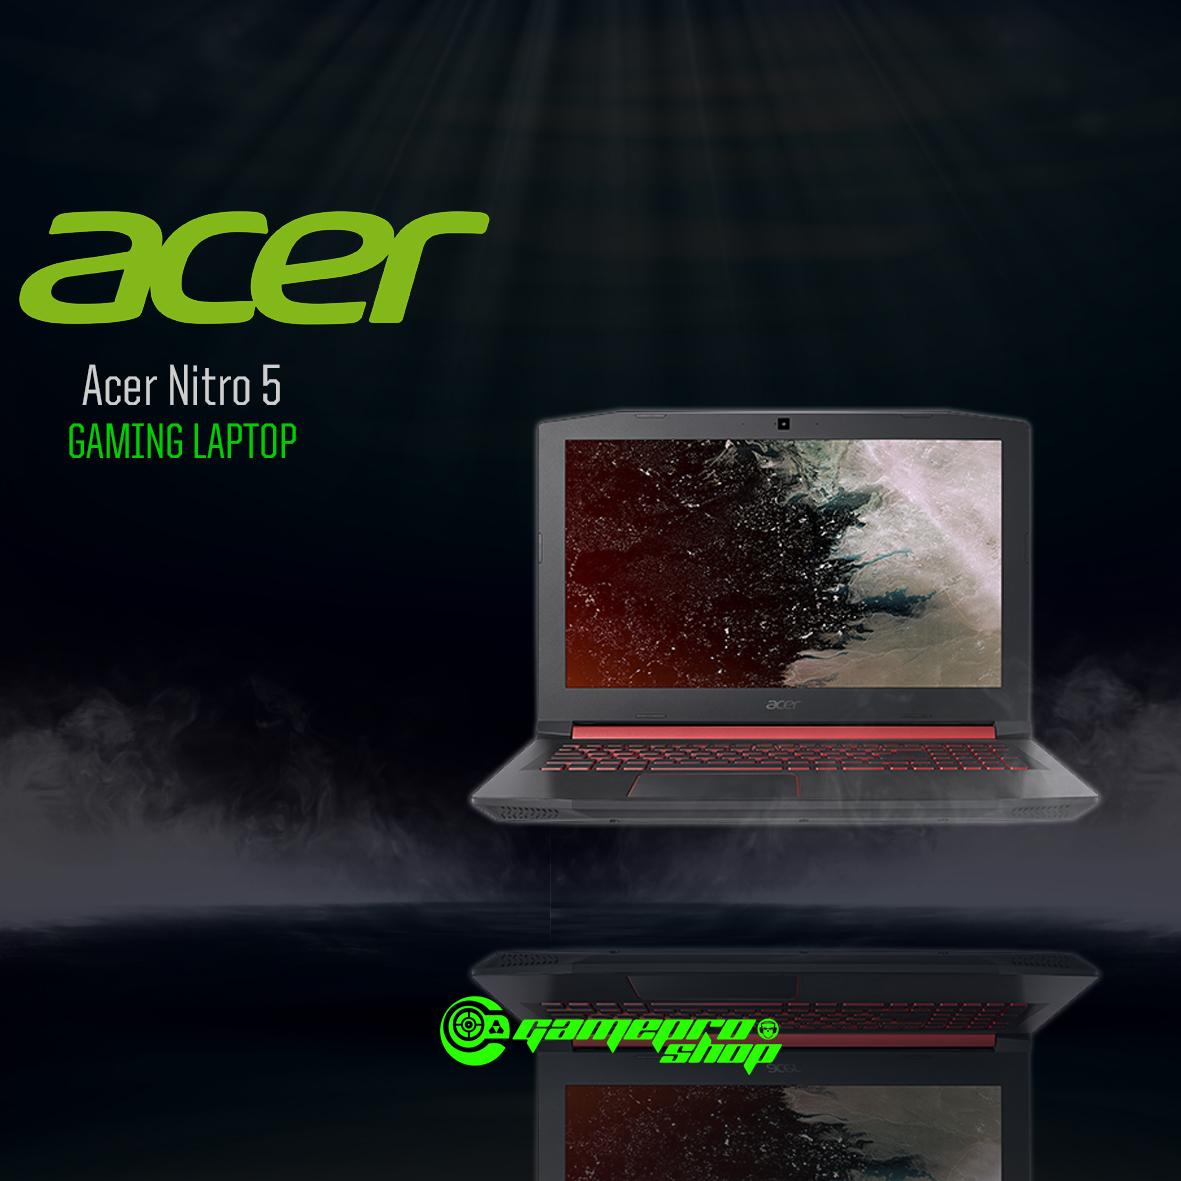 Acer Nitro 5 (AN515-52-784Y) – 15.6″ FHD/i7-8750H/8GB DDR4/128GB SSD + 1TB HDD/Nvidia GTX1060/W10 (Black) *COMEX PROMO*